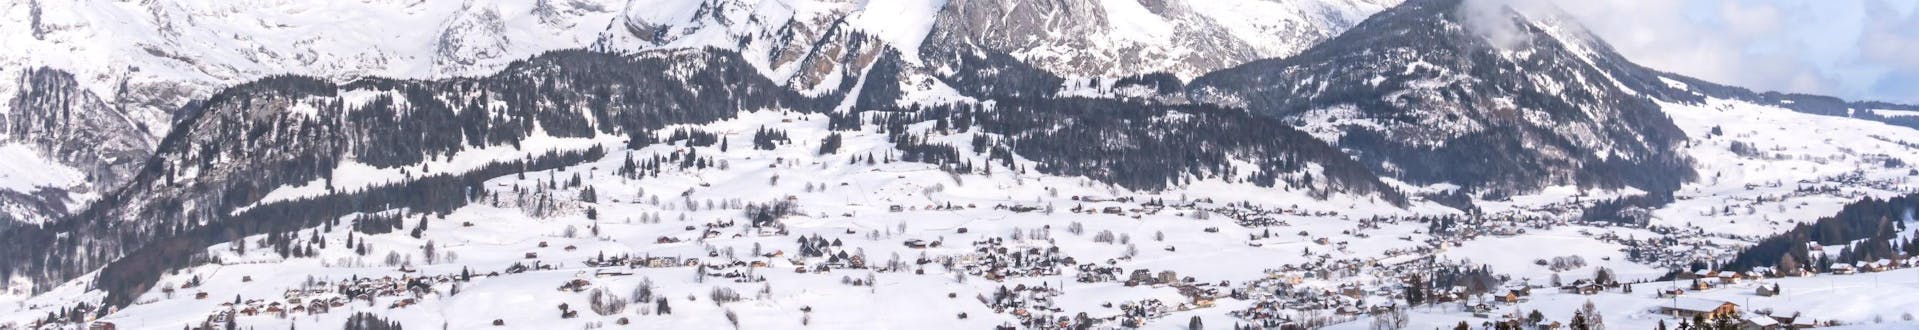 Ein Blick auf eine schneebedeckte Landschaft in der schweizer Region Toggenburg, wo Besucher bei den örtlichen Skischulen eine Skikurs buchen können.